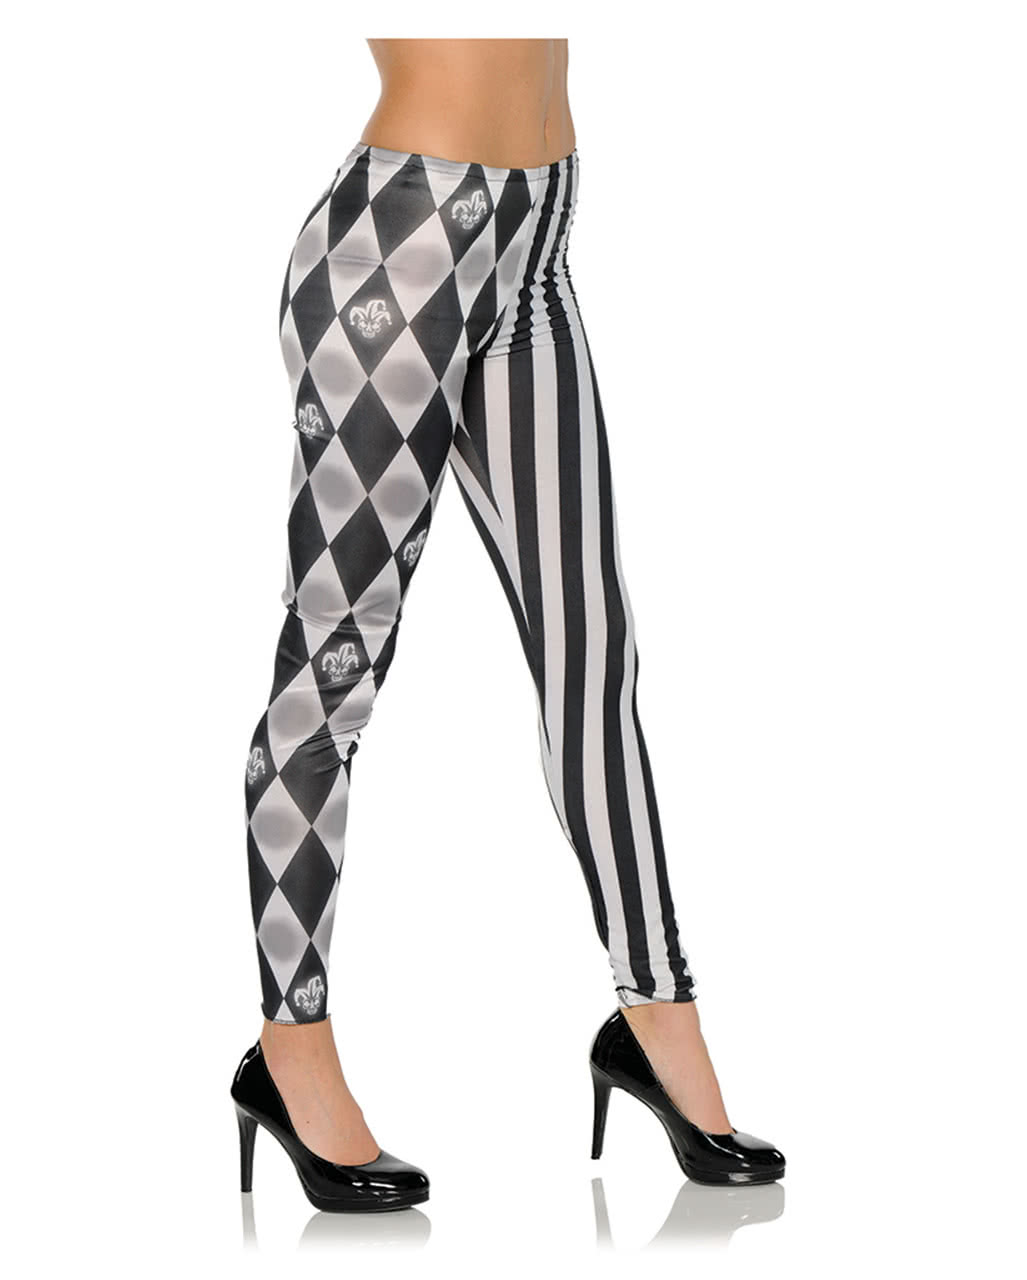 Harlequin Costume Leggings Black White Halloween Trousers